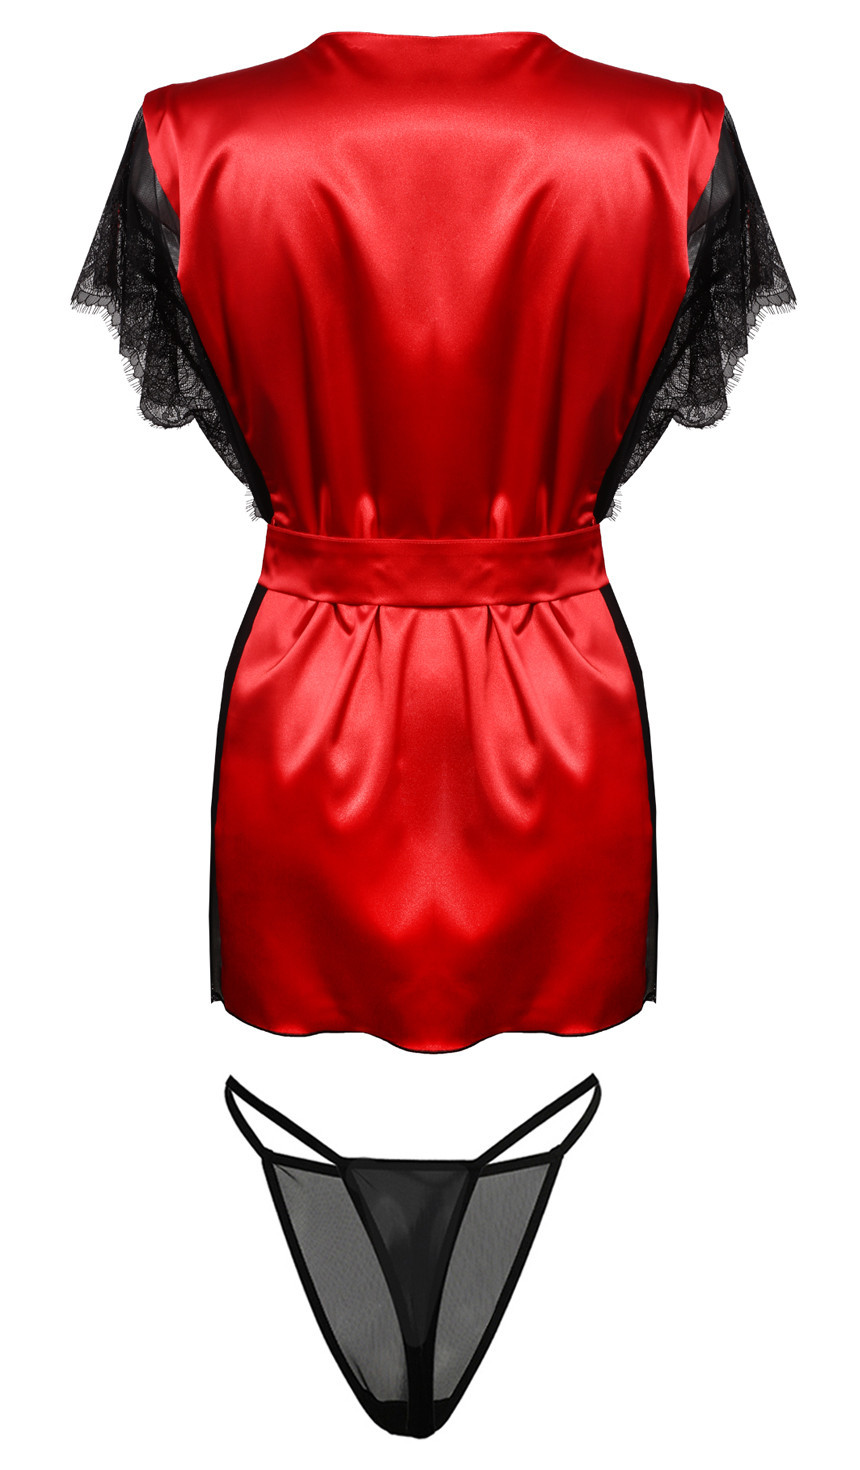 Housecoat model 18240905 Red S - DKaren